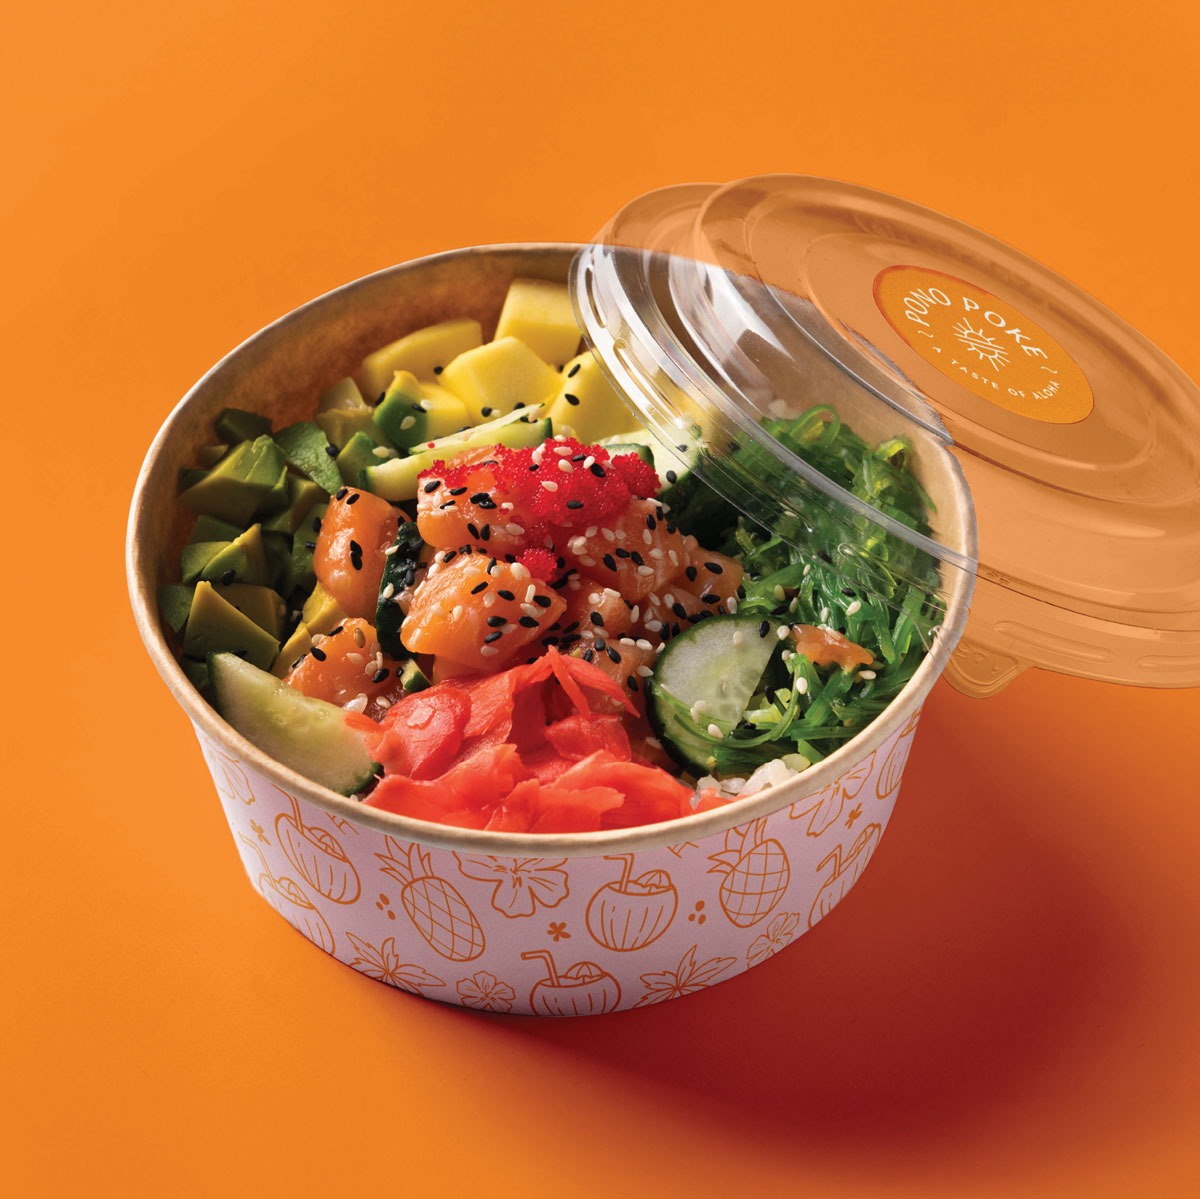 Branding poke bowl restaurant packaging